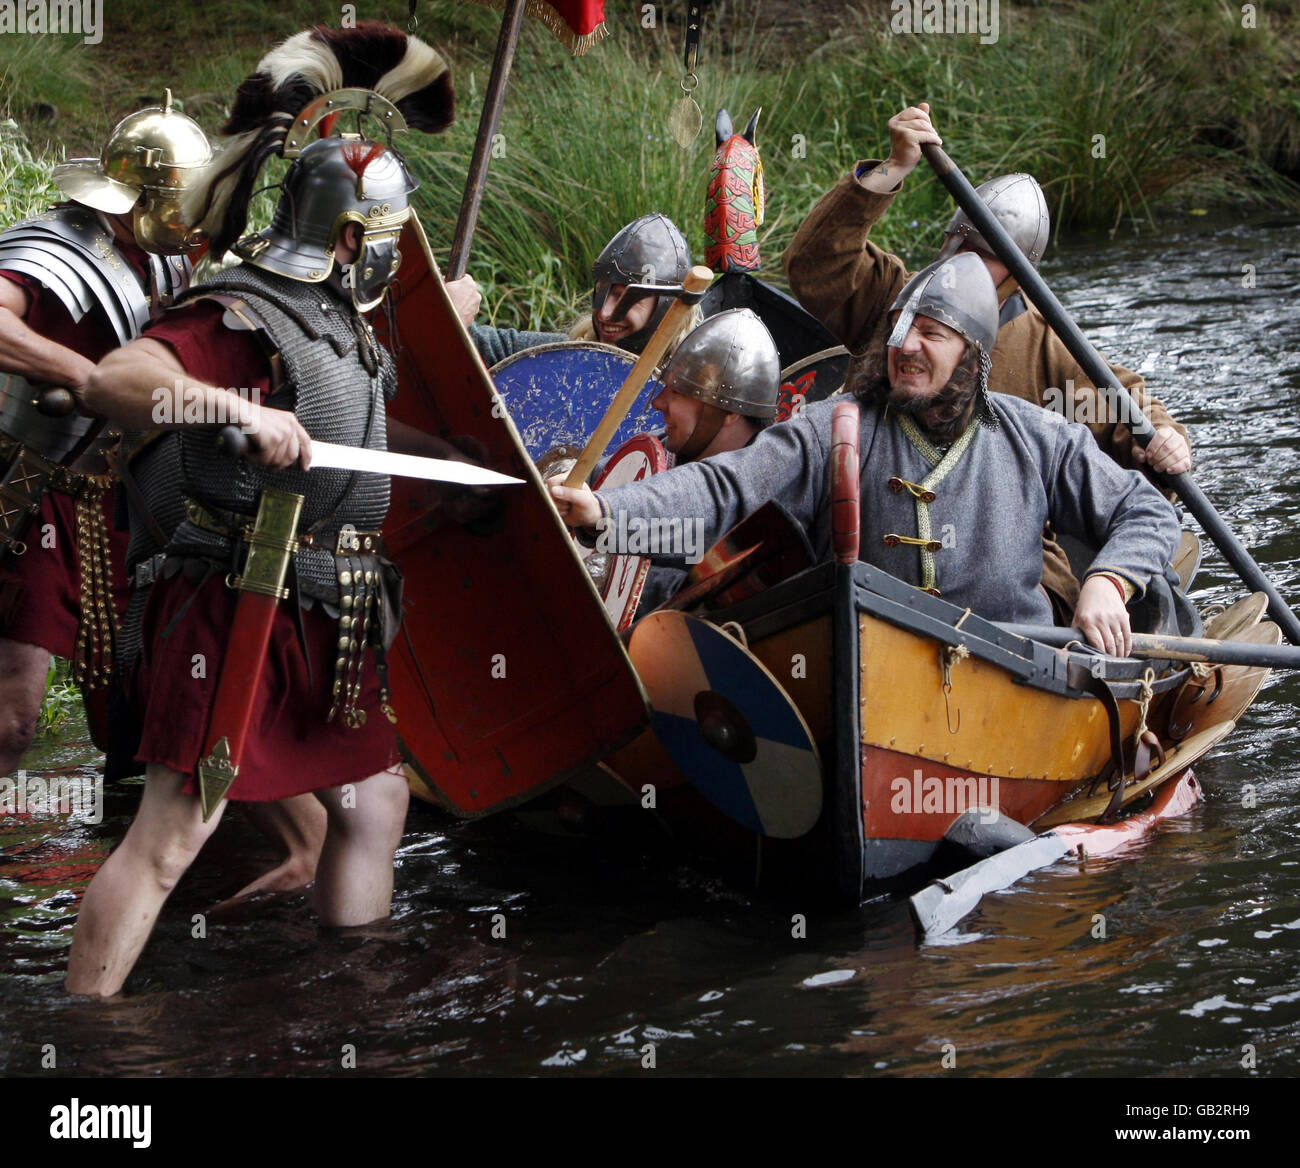 Gli appassionati del National Living History Festival di Lankark Loch in Scozia rievocano una scena storica come i predatori vichinghi in uno scontro tra navi da diporto e soldati romani. Foto Stock